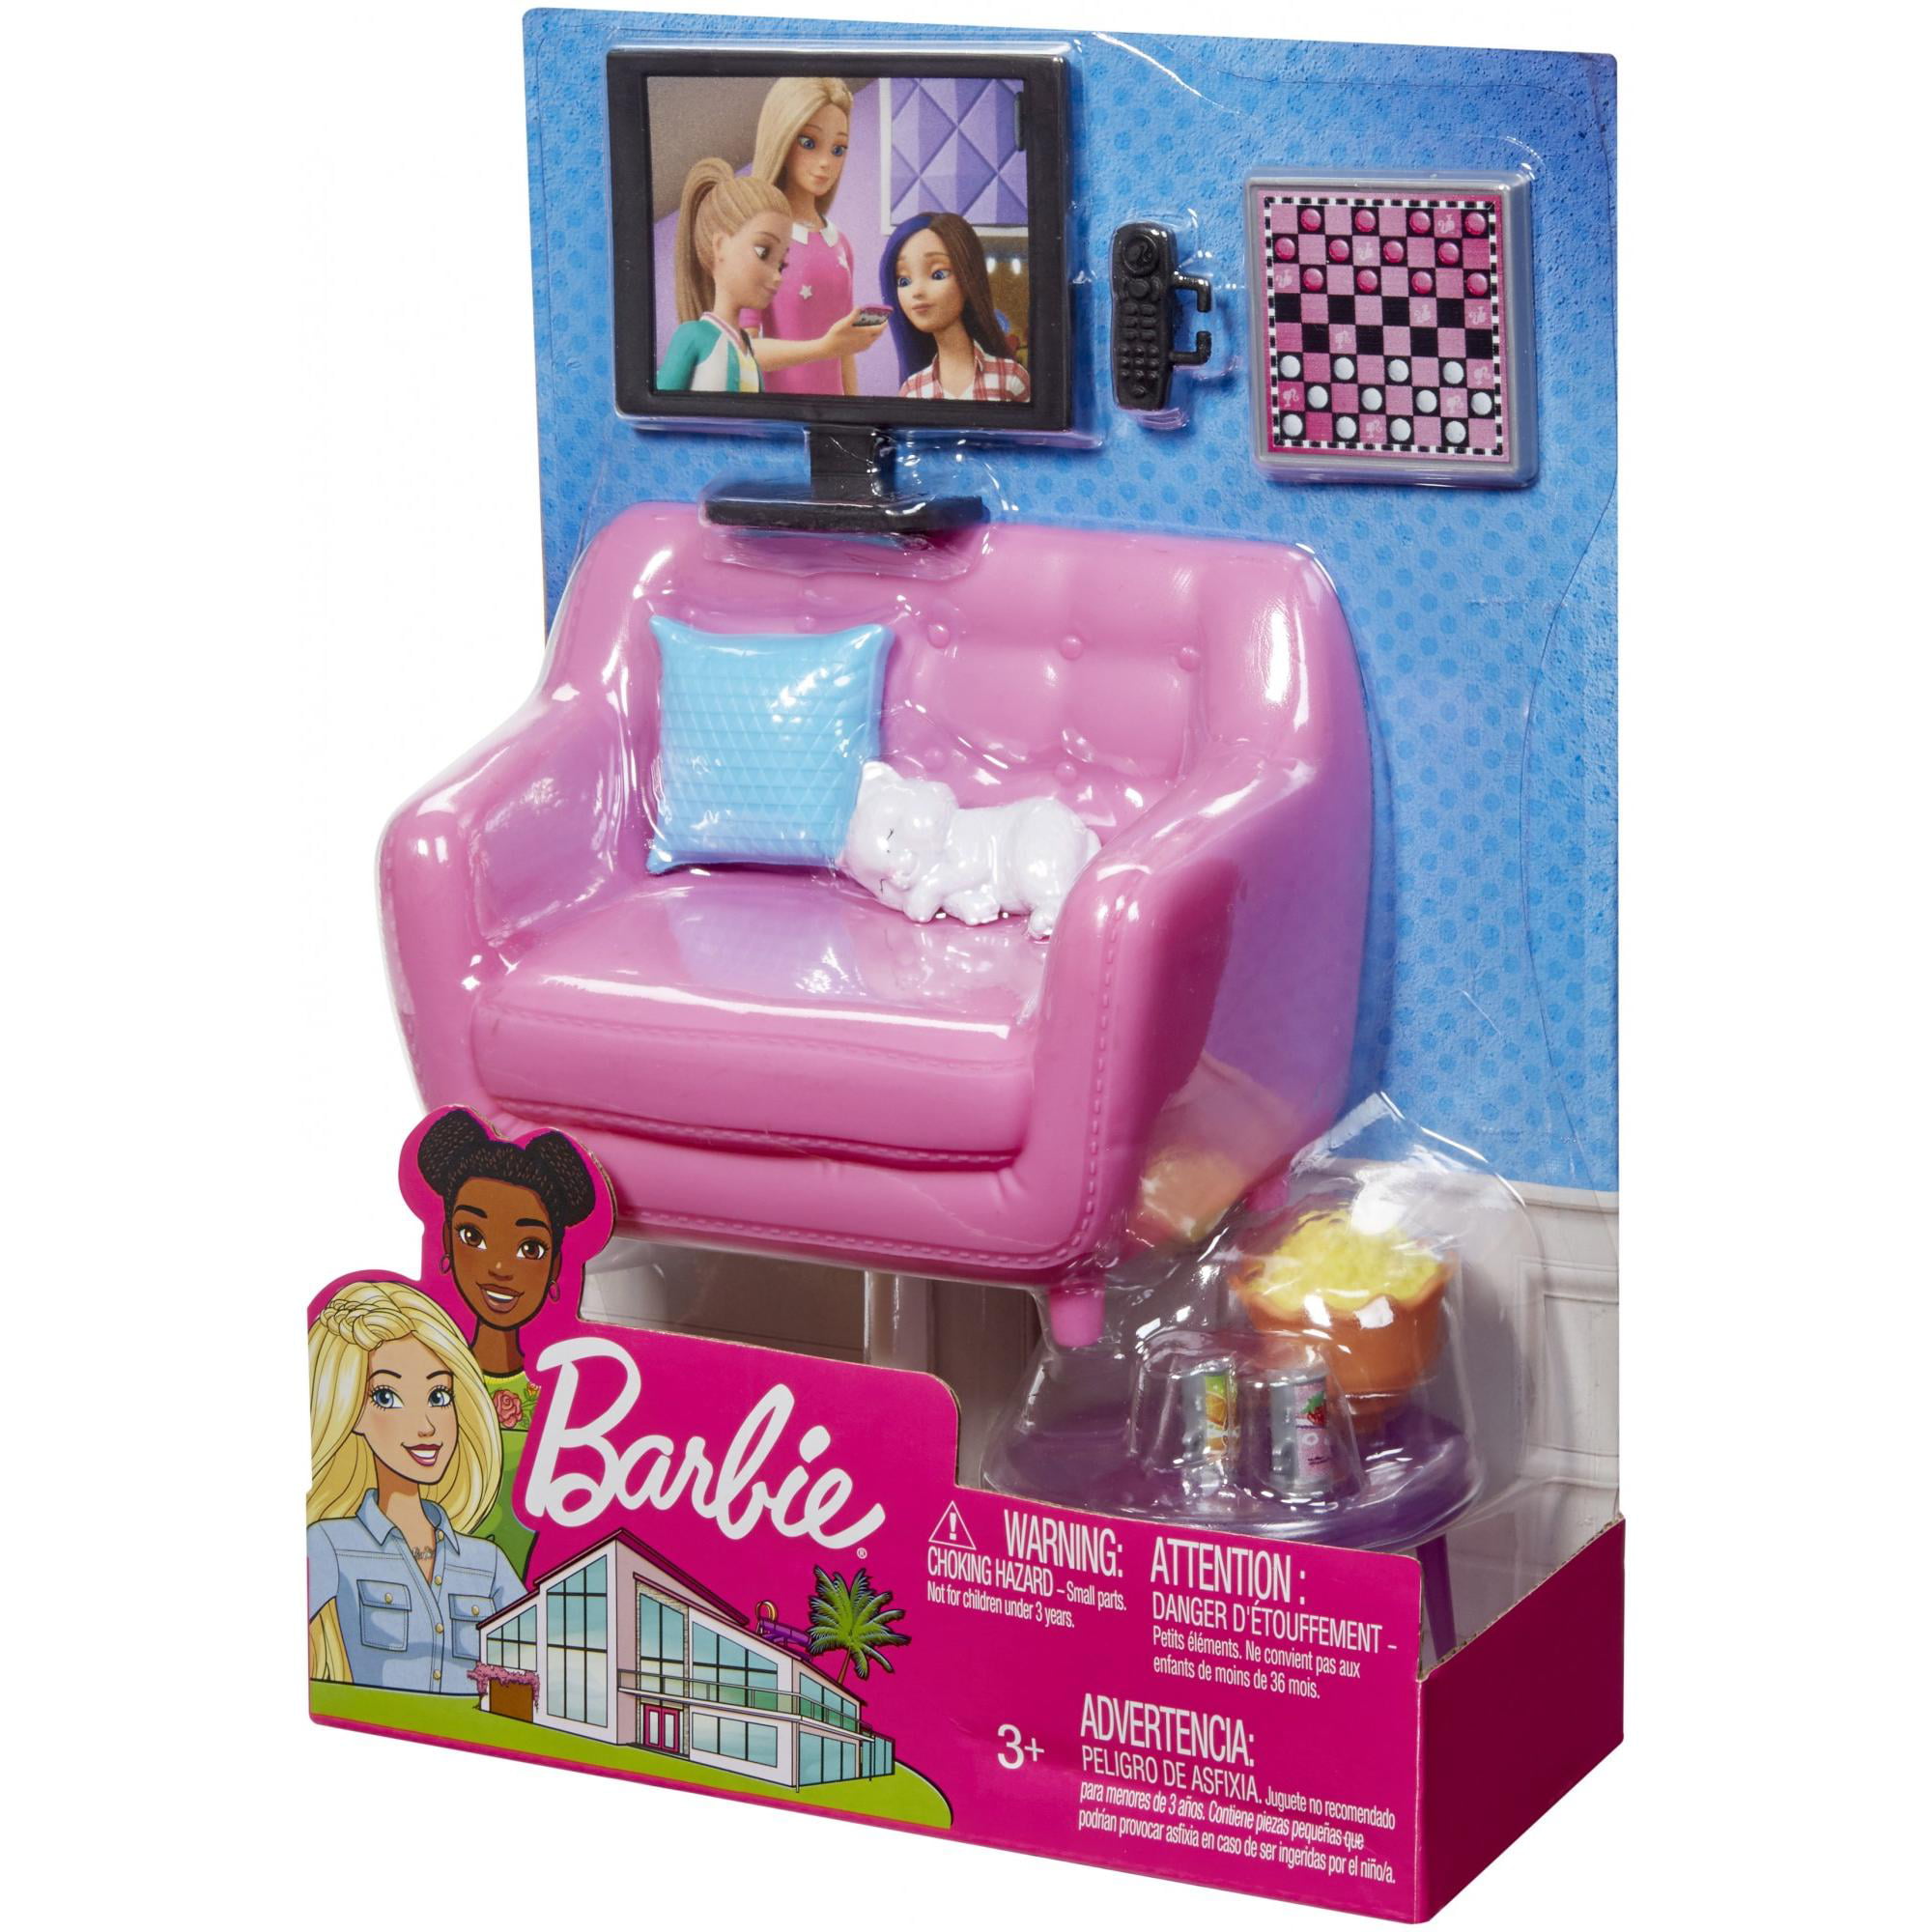 Barbie Estate Indoor Furniture Living Room Set With Kitten Walmartcom Walmartcom